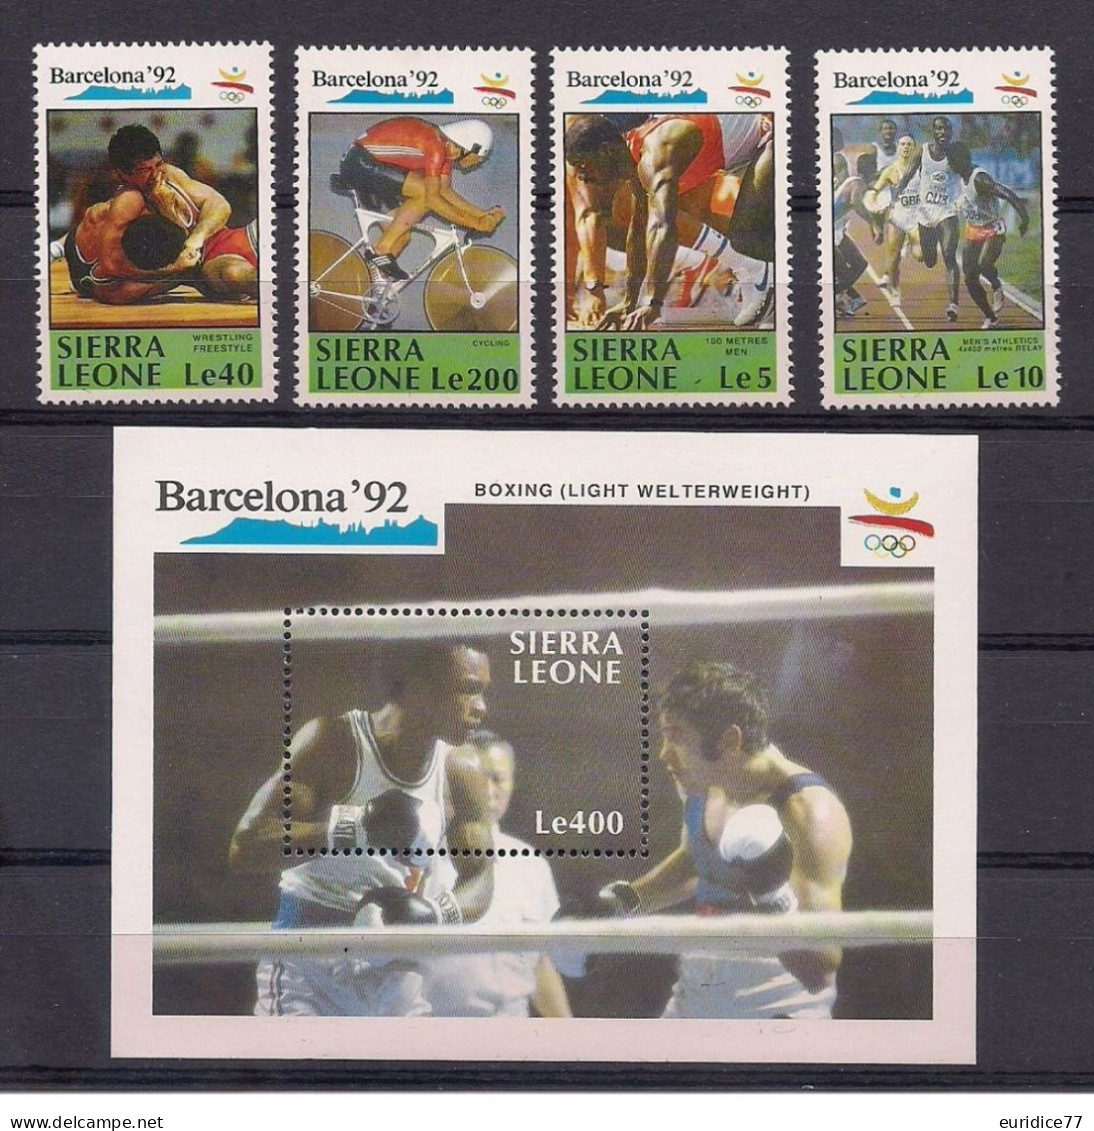 Sierra Leone 1990 - Olympic Games Barcelona 92 Mnh** - Sommer 1992: Barcelone